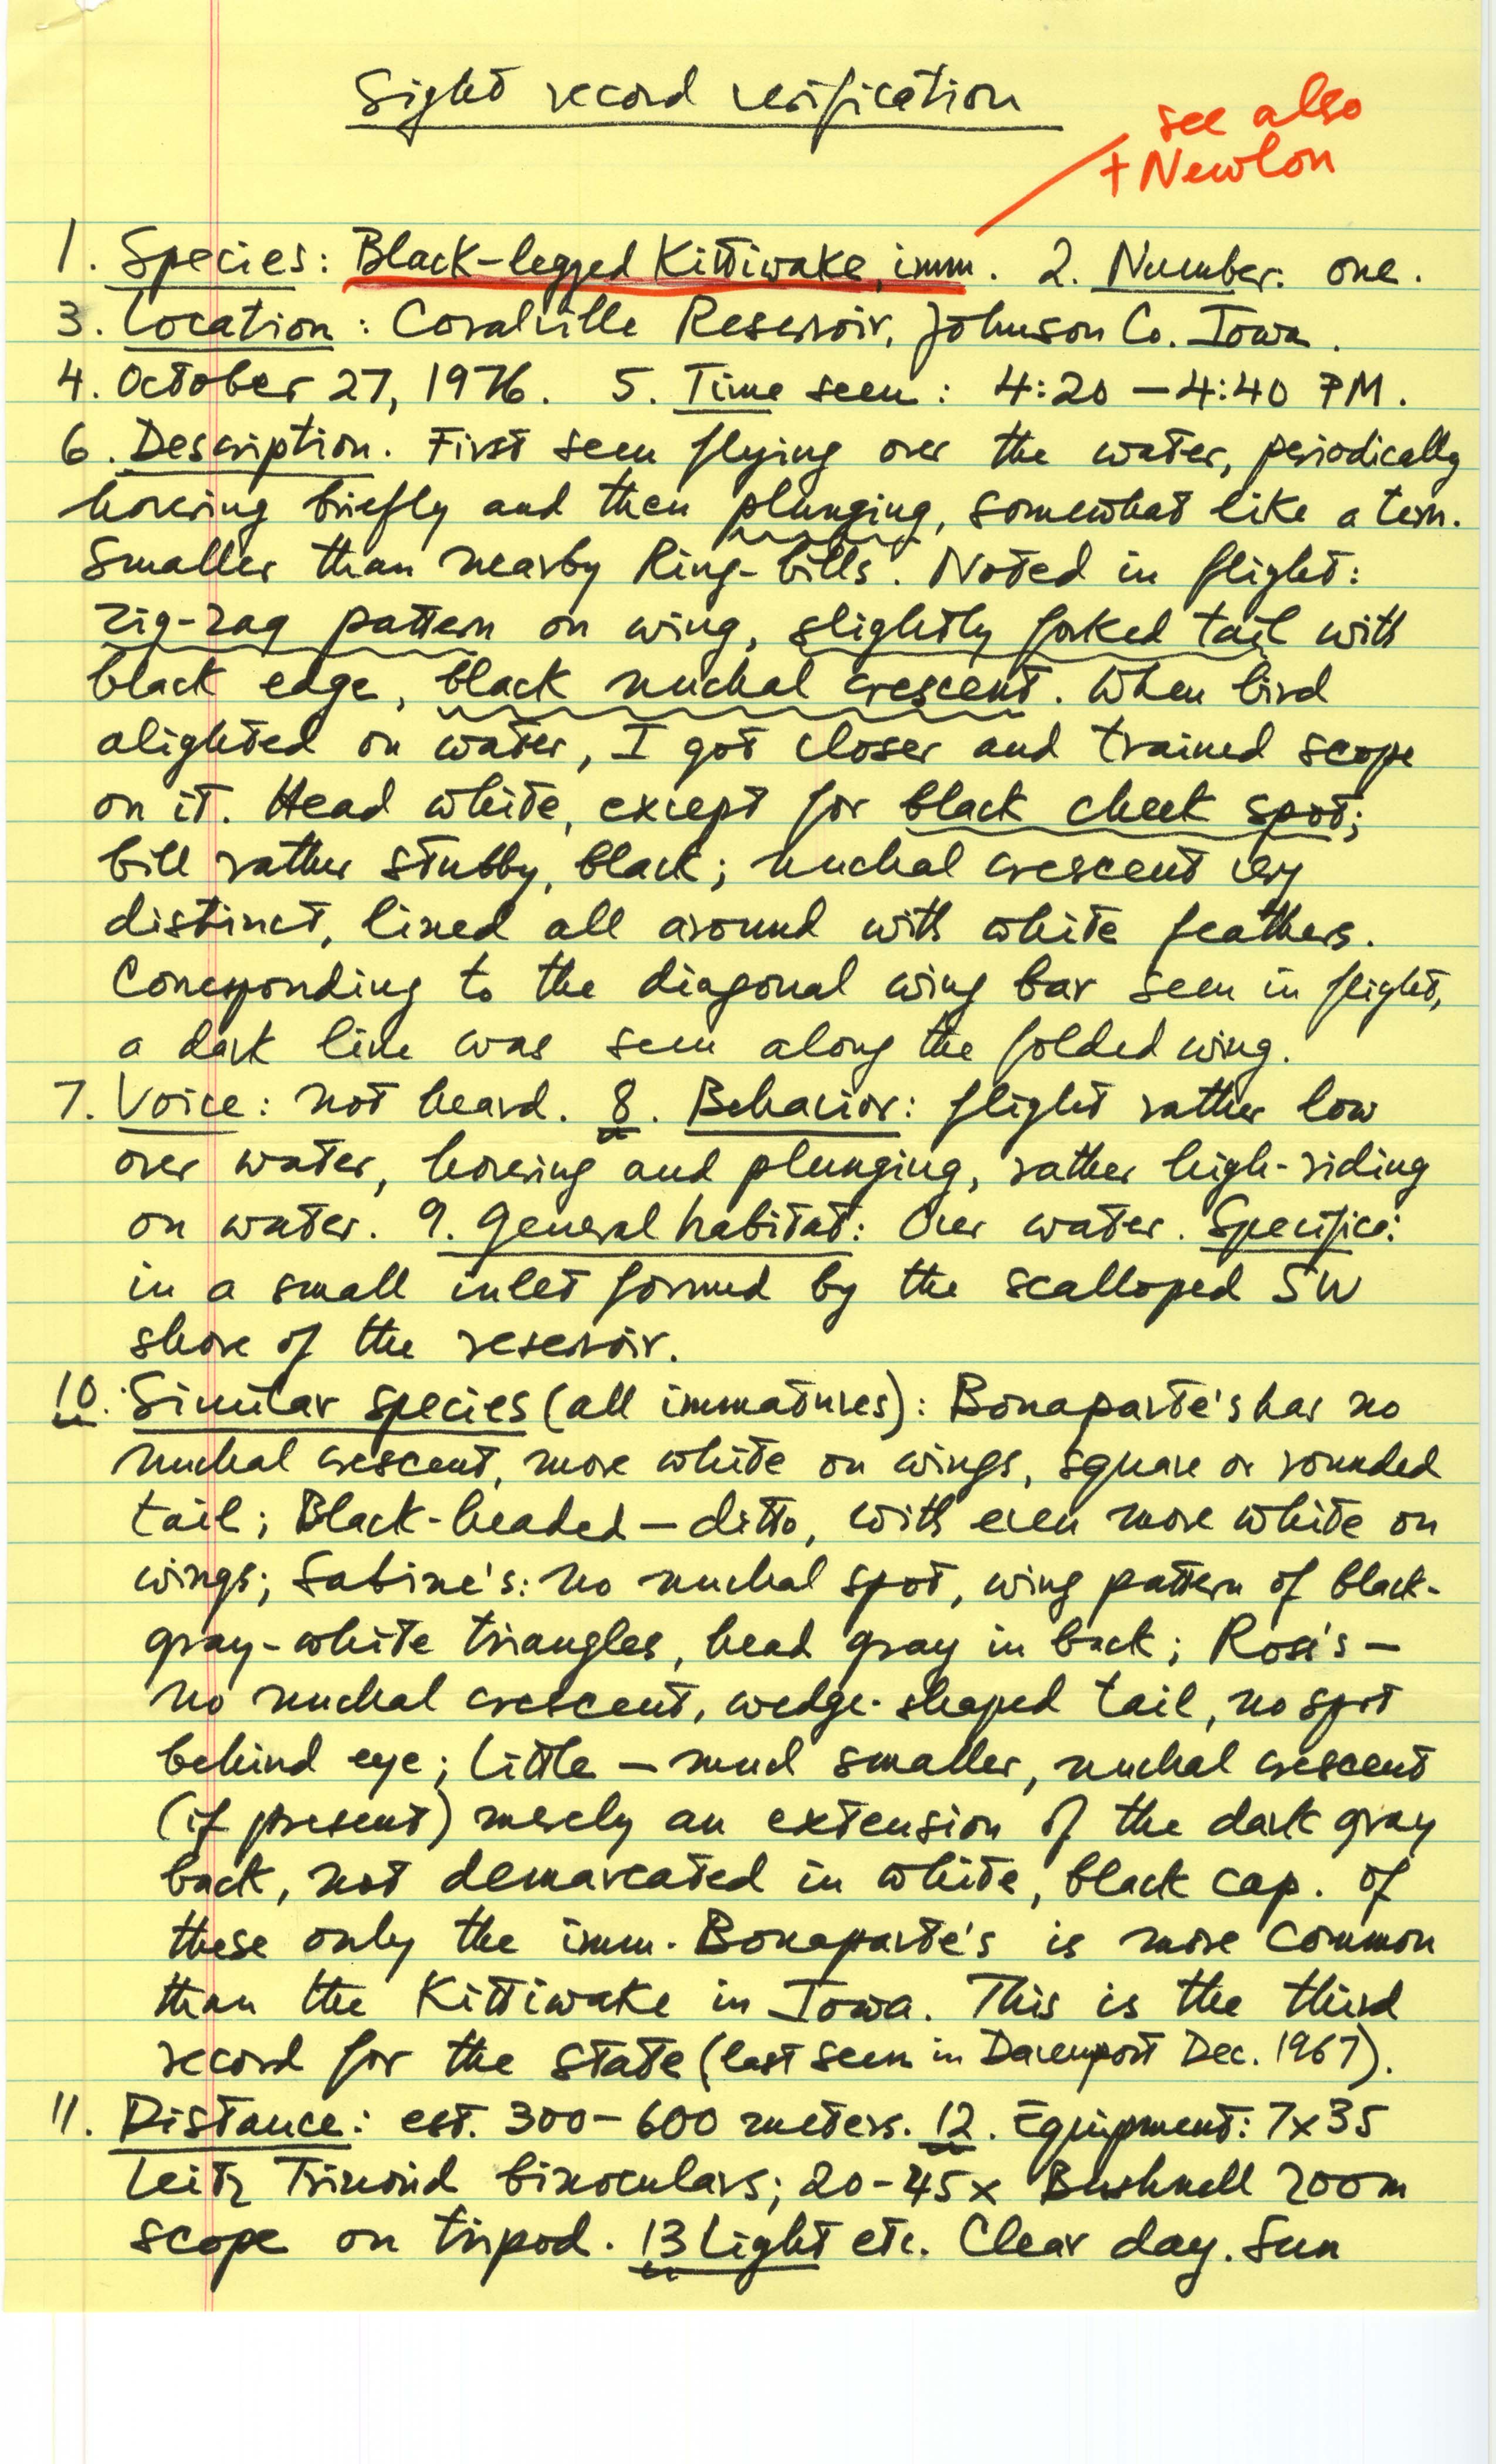 Rare bird documentation form for Black-legged Kittiwake at Coralville Reservoir, 1976